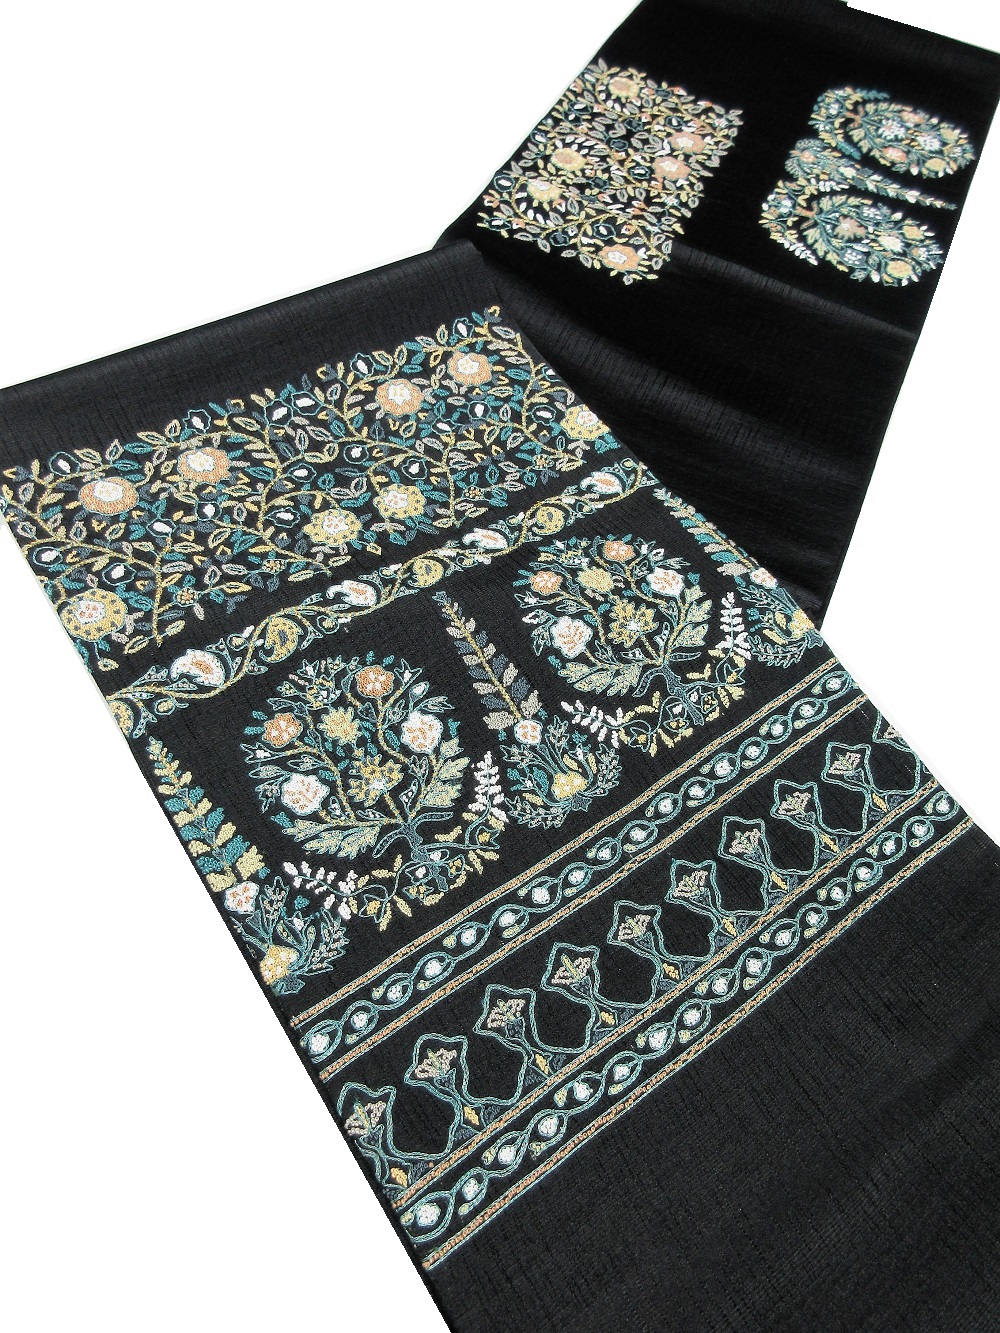 3,000年の歴史に培われた伝統の技、中国三大刺繍の一つ「相良刺繍」でオリエント調 更紗文様が施されたお洒落袋帯。